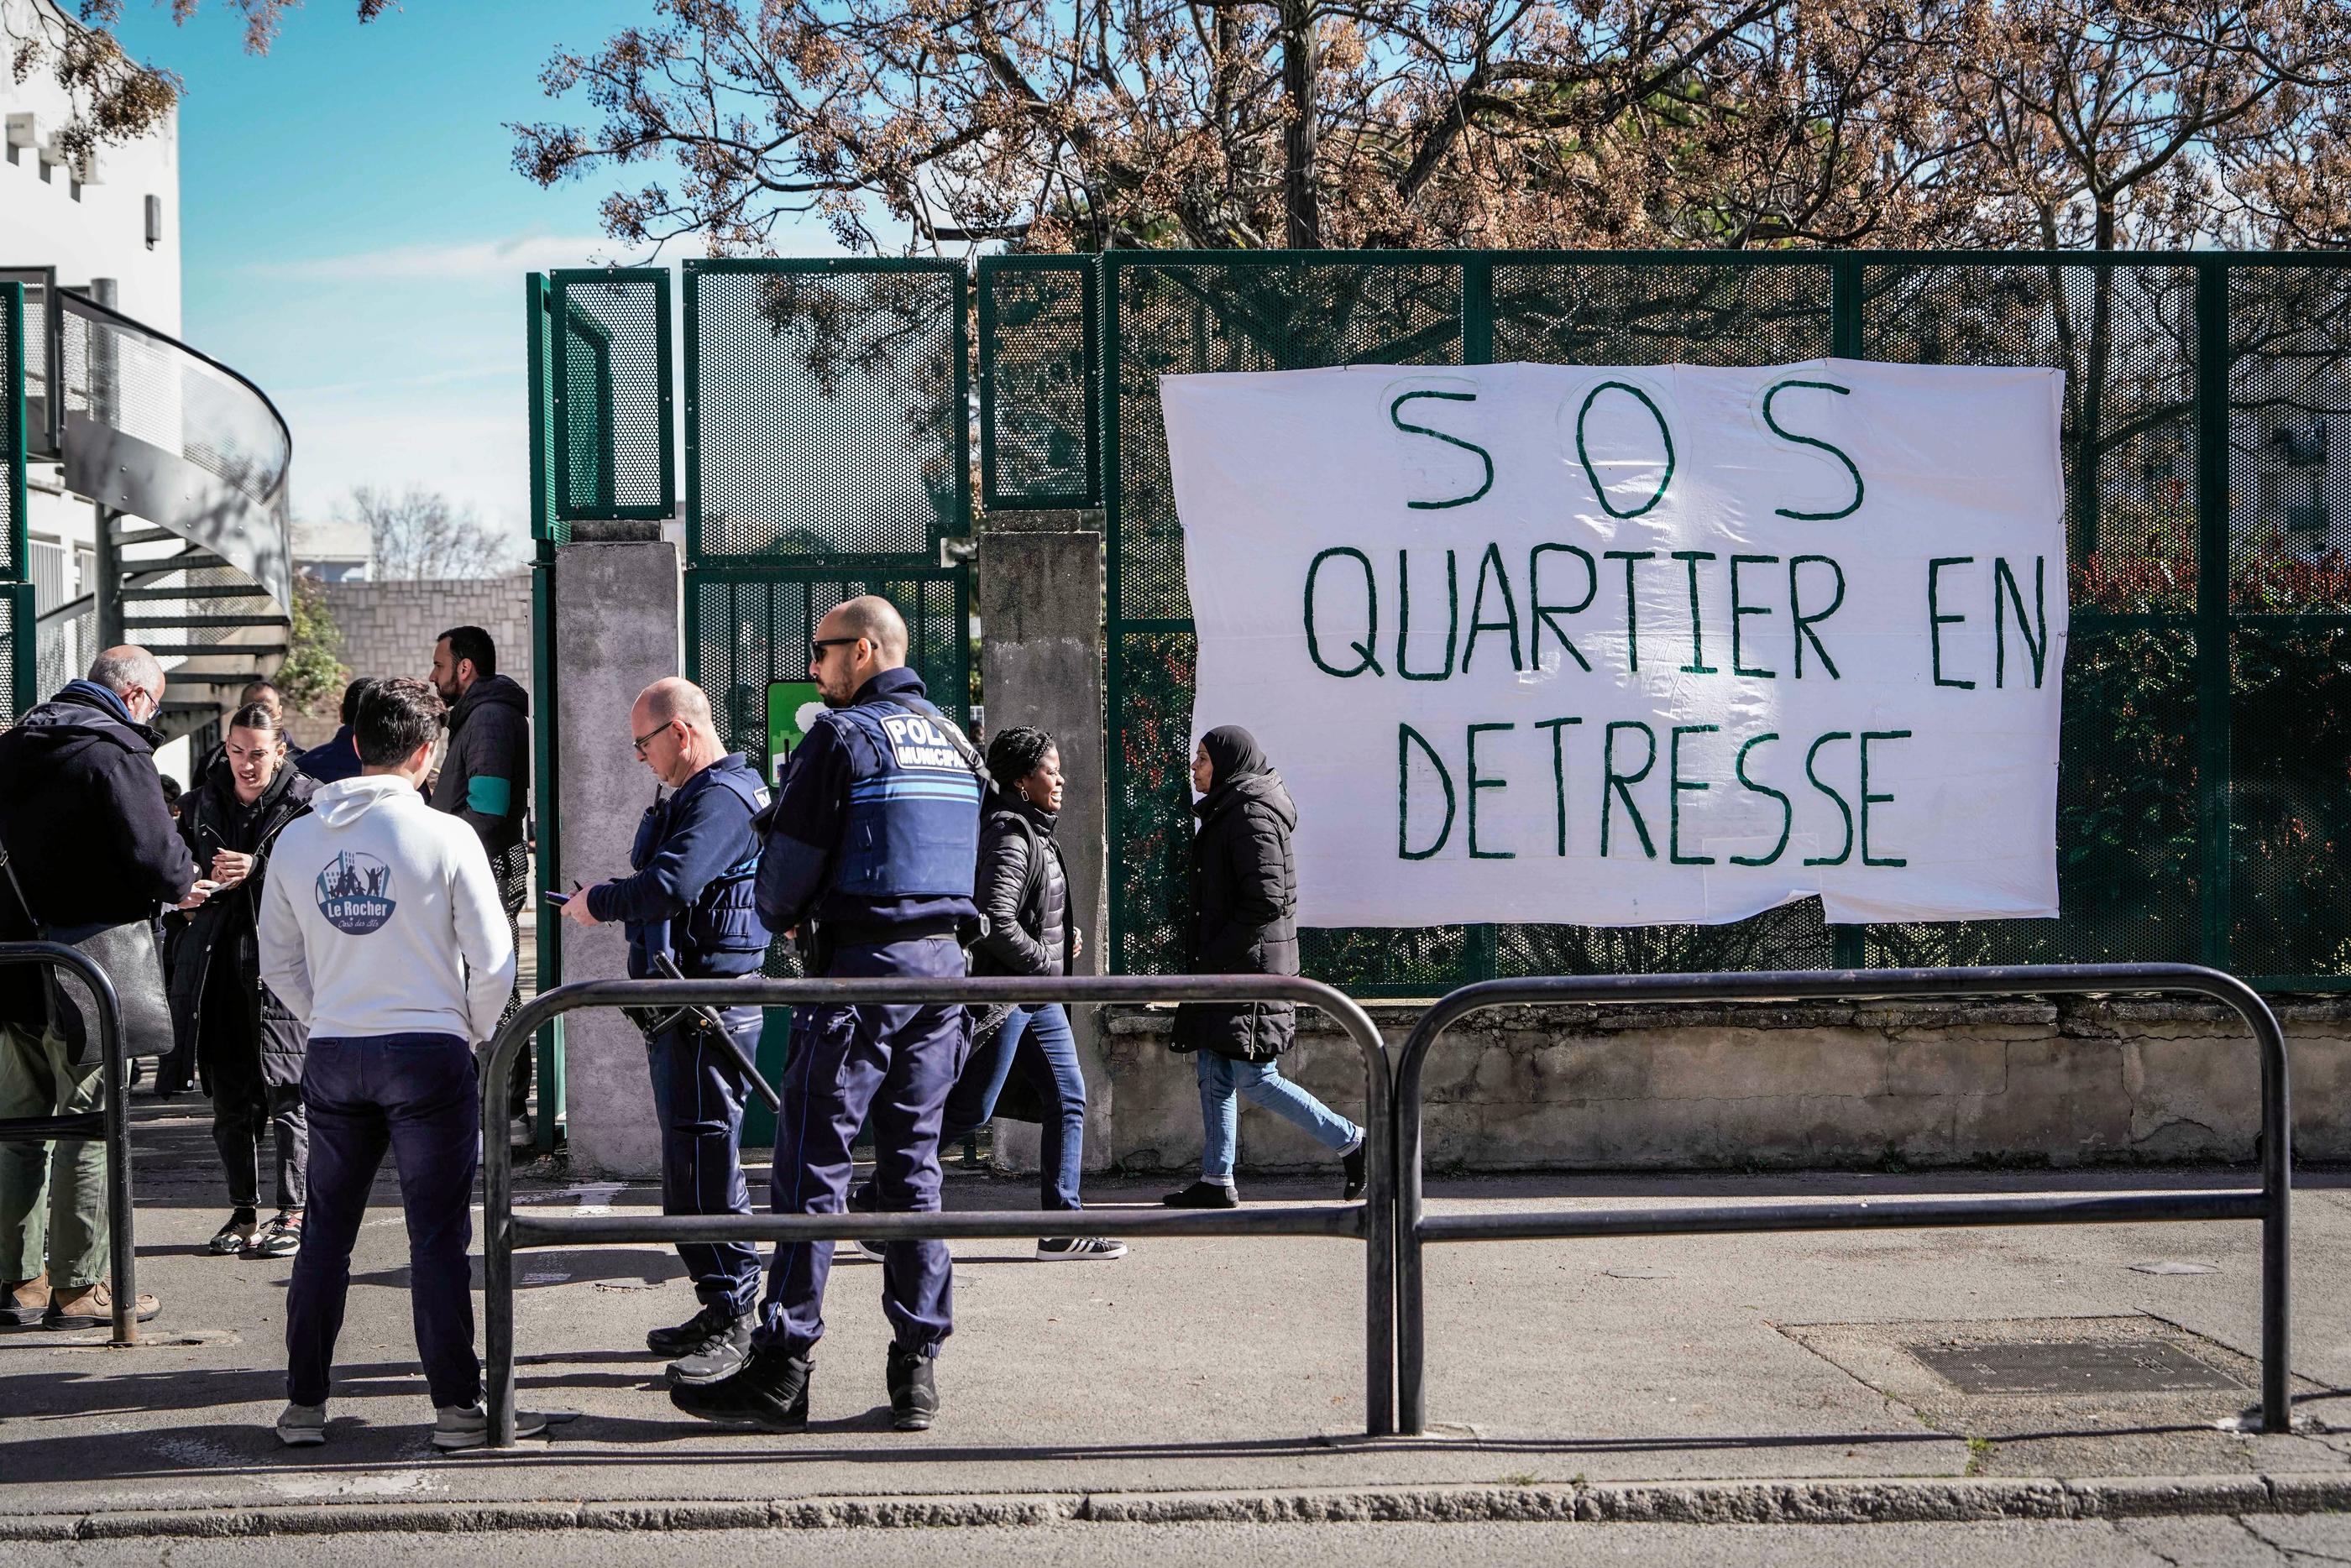 À Nîmes (Gard), le 1er mars, les parents d'élèves d'une école devant laquelle a eu lieu une fusillade en février, exprimaient leurs craintes au sujet de la sécurité. MaxPPP/Midi Libre/Mikaël Anisset